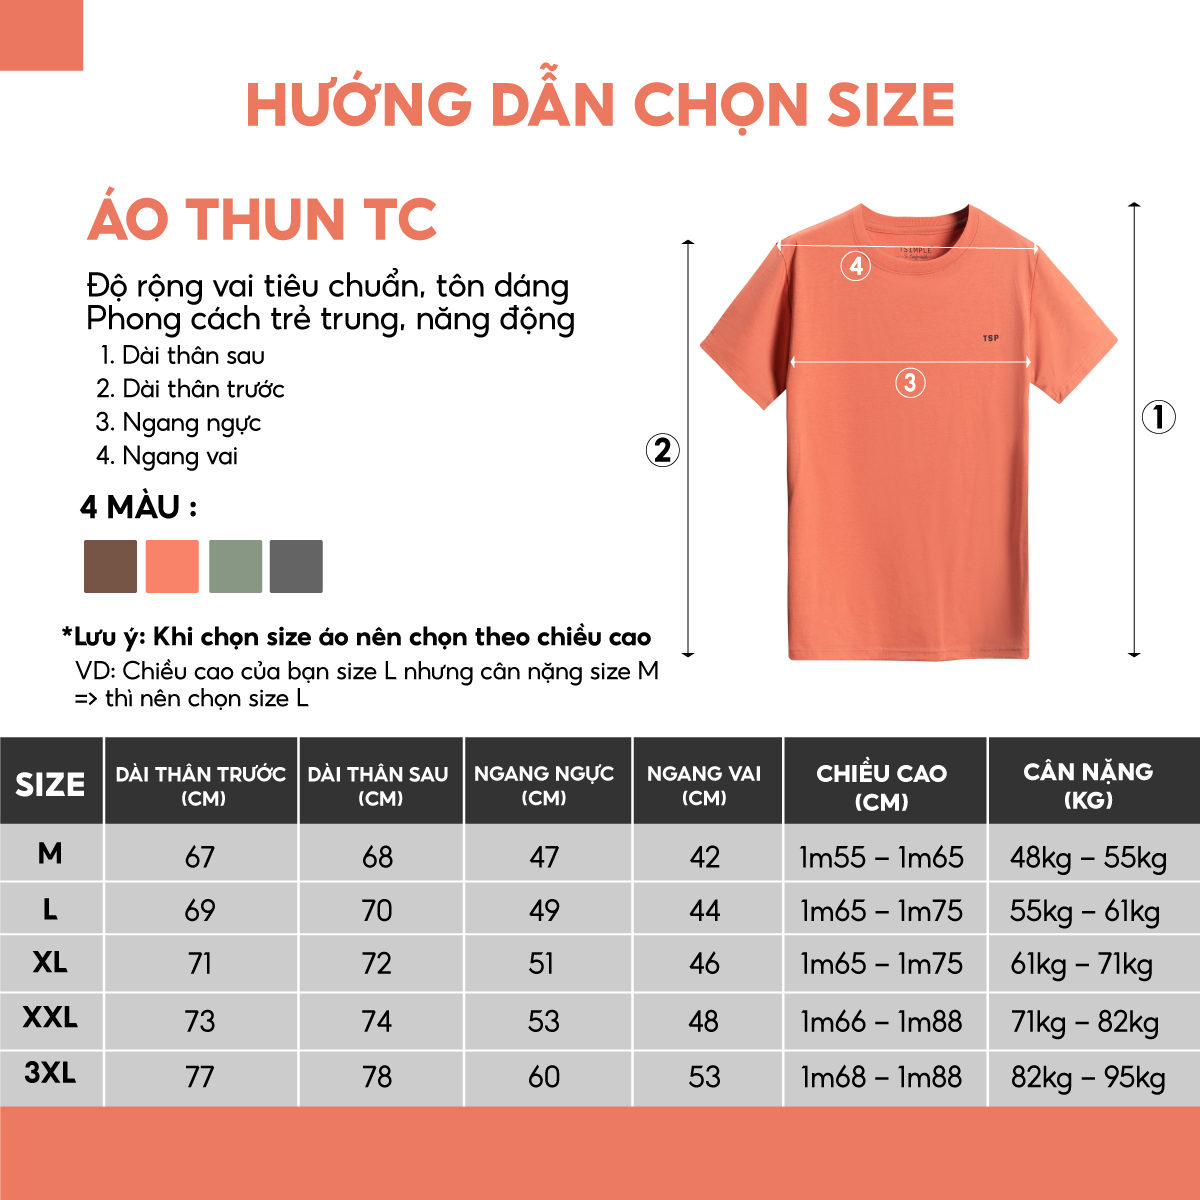 Hình ảnh Áo Thun Nam Cổ Tròn TSIMPLE phông trơn tay ngắn vải Cotton cao cấp chống nhăn chuẩn form MSSATTCX